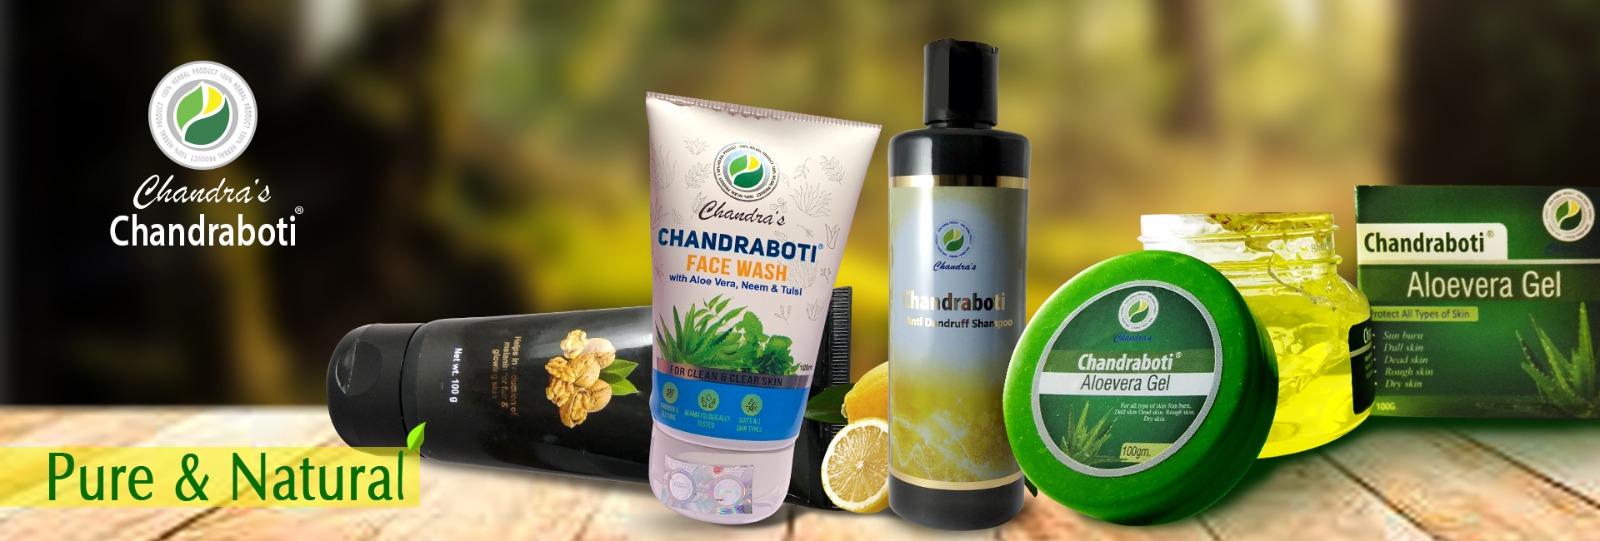 Chandraboti Ayurvedic product banner new